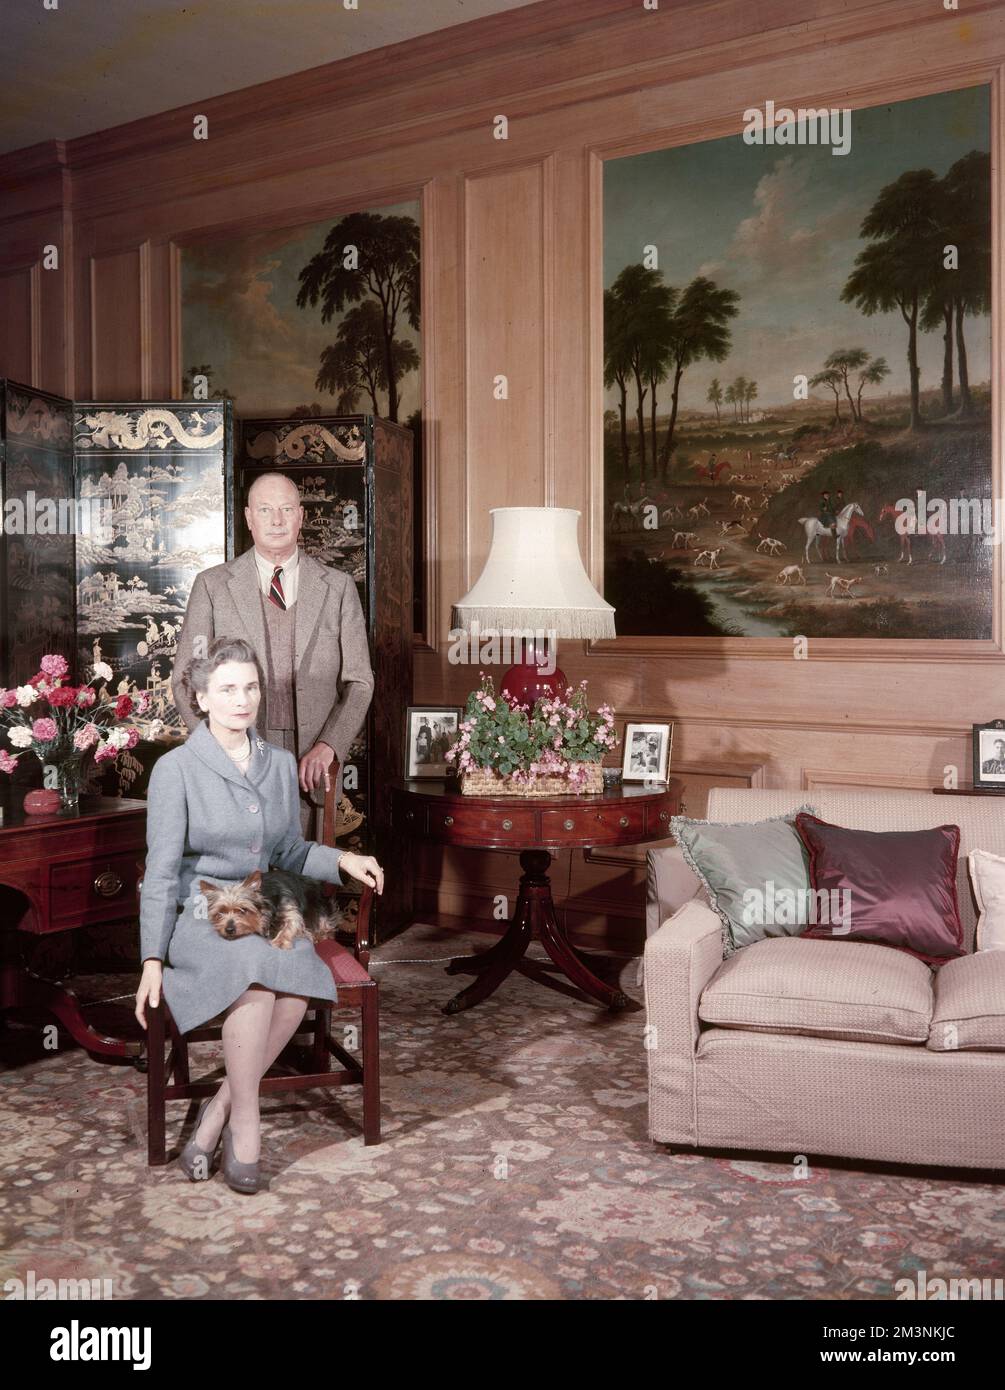 El príncipe Enrique, duque de Gloucester (1900 - 1974) junto con su esposa, la princesa Alice, duquesa de Gloucester (1901 - 2004) en su casa, Barnwell Manor, Northamptonshire. Fecha: 1960 Foto de stock